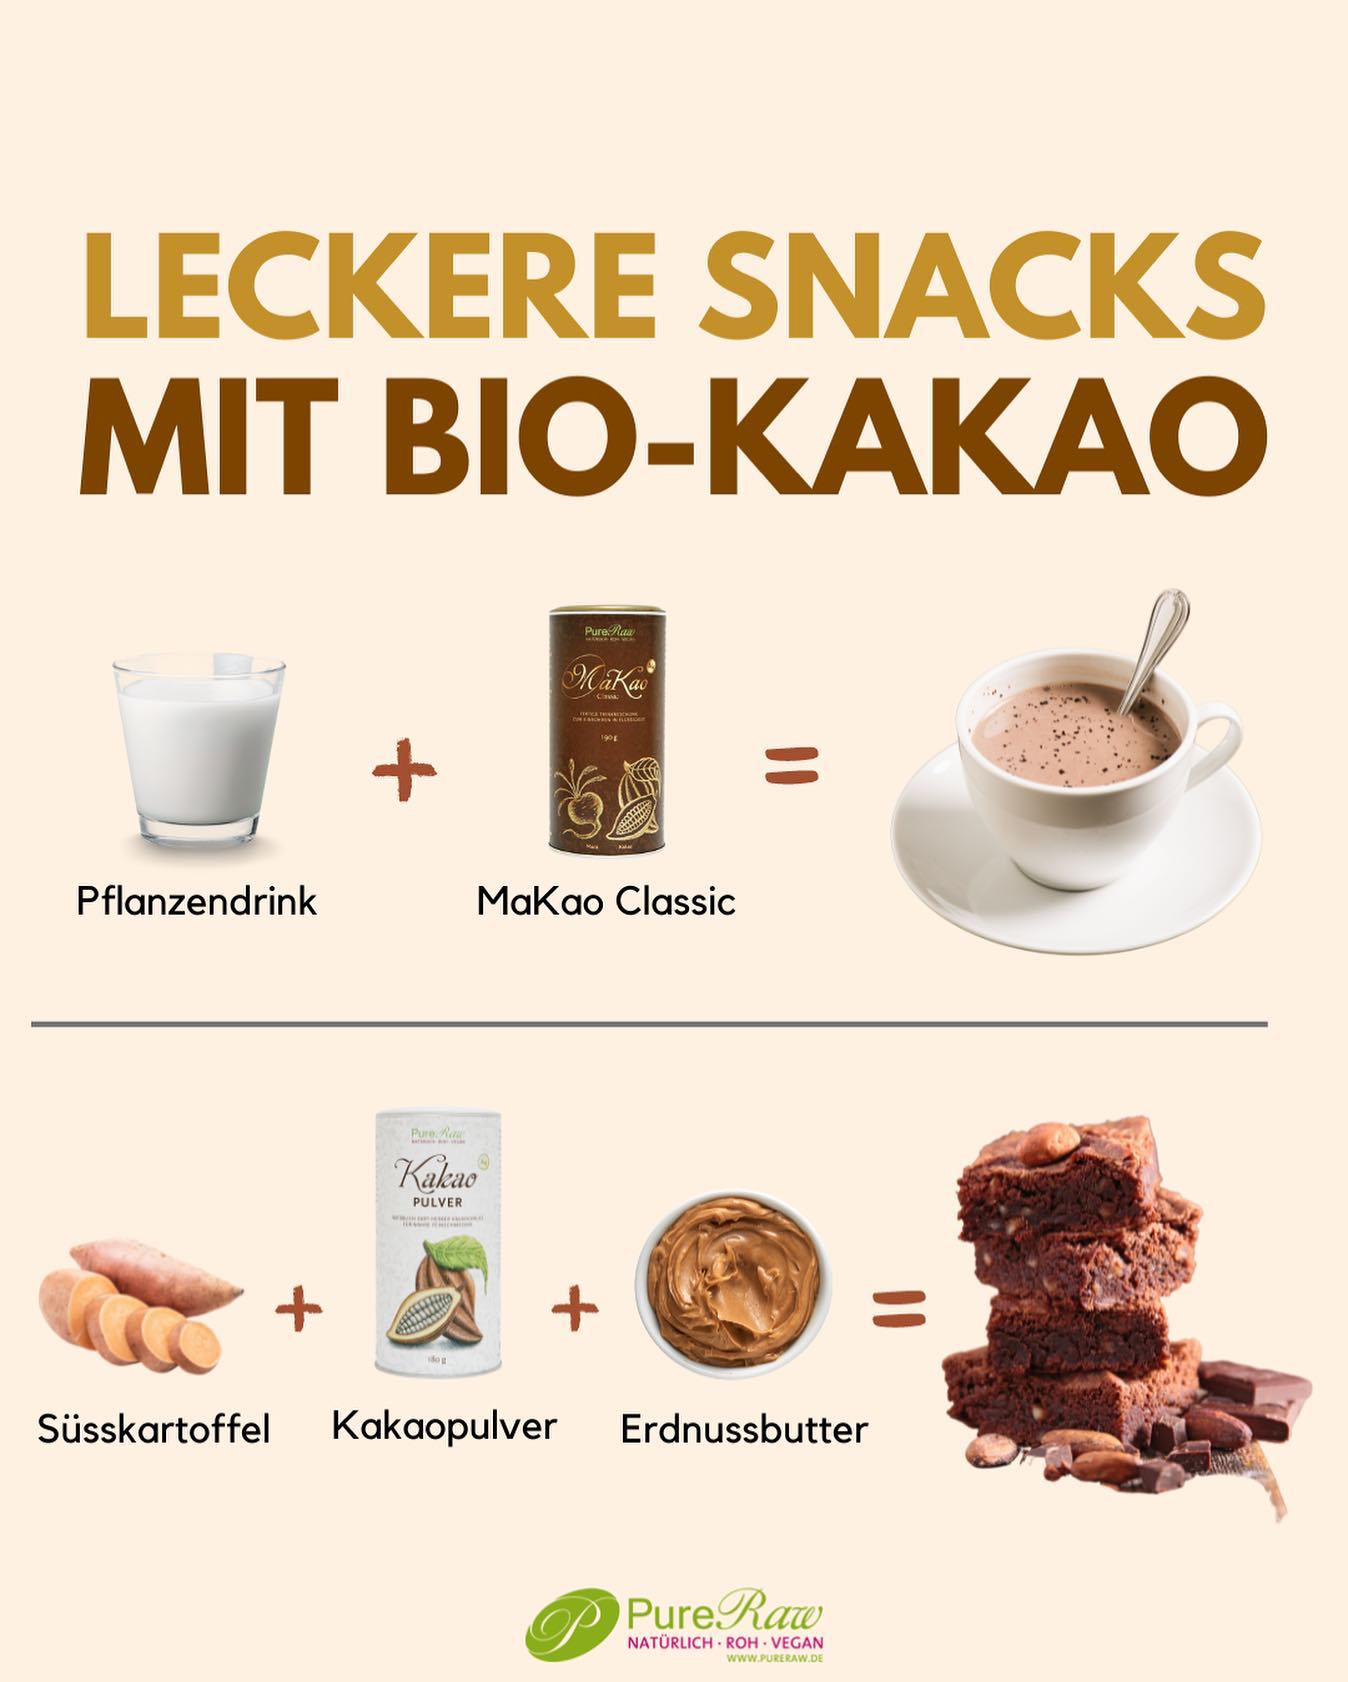 Egal ob als Nachtisch oder als Snack zwischendurch, diese leckeren Kakao-Speisen sind perfekt für den kalten Winter!🤎

Unseren MaKao Classic sowie unser Bio Kakaopulver findest du in unserem Online-Shop.☺️

Mit zauberhaften Grüßen
Deine Kirstin und PureRaw-Team

.
.
. 

#fairtrade #fairtradeproducts #fairtradechocolate #schokolade #rohkost #kakao #cacao #kakaopulver #bio #rohkostqualität